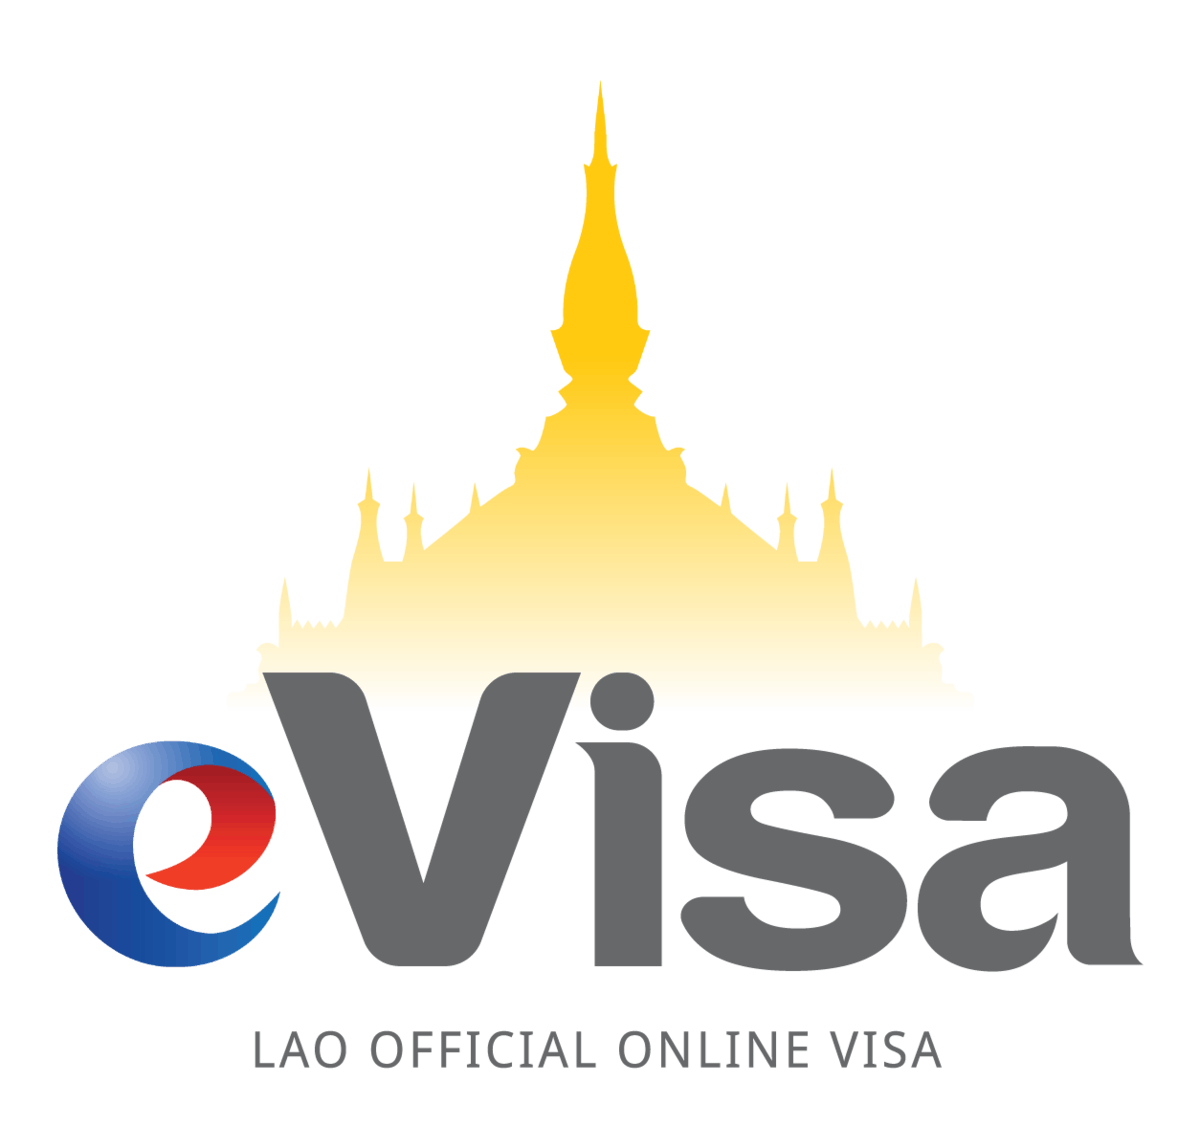 Laos e-visa logo.